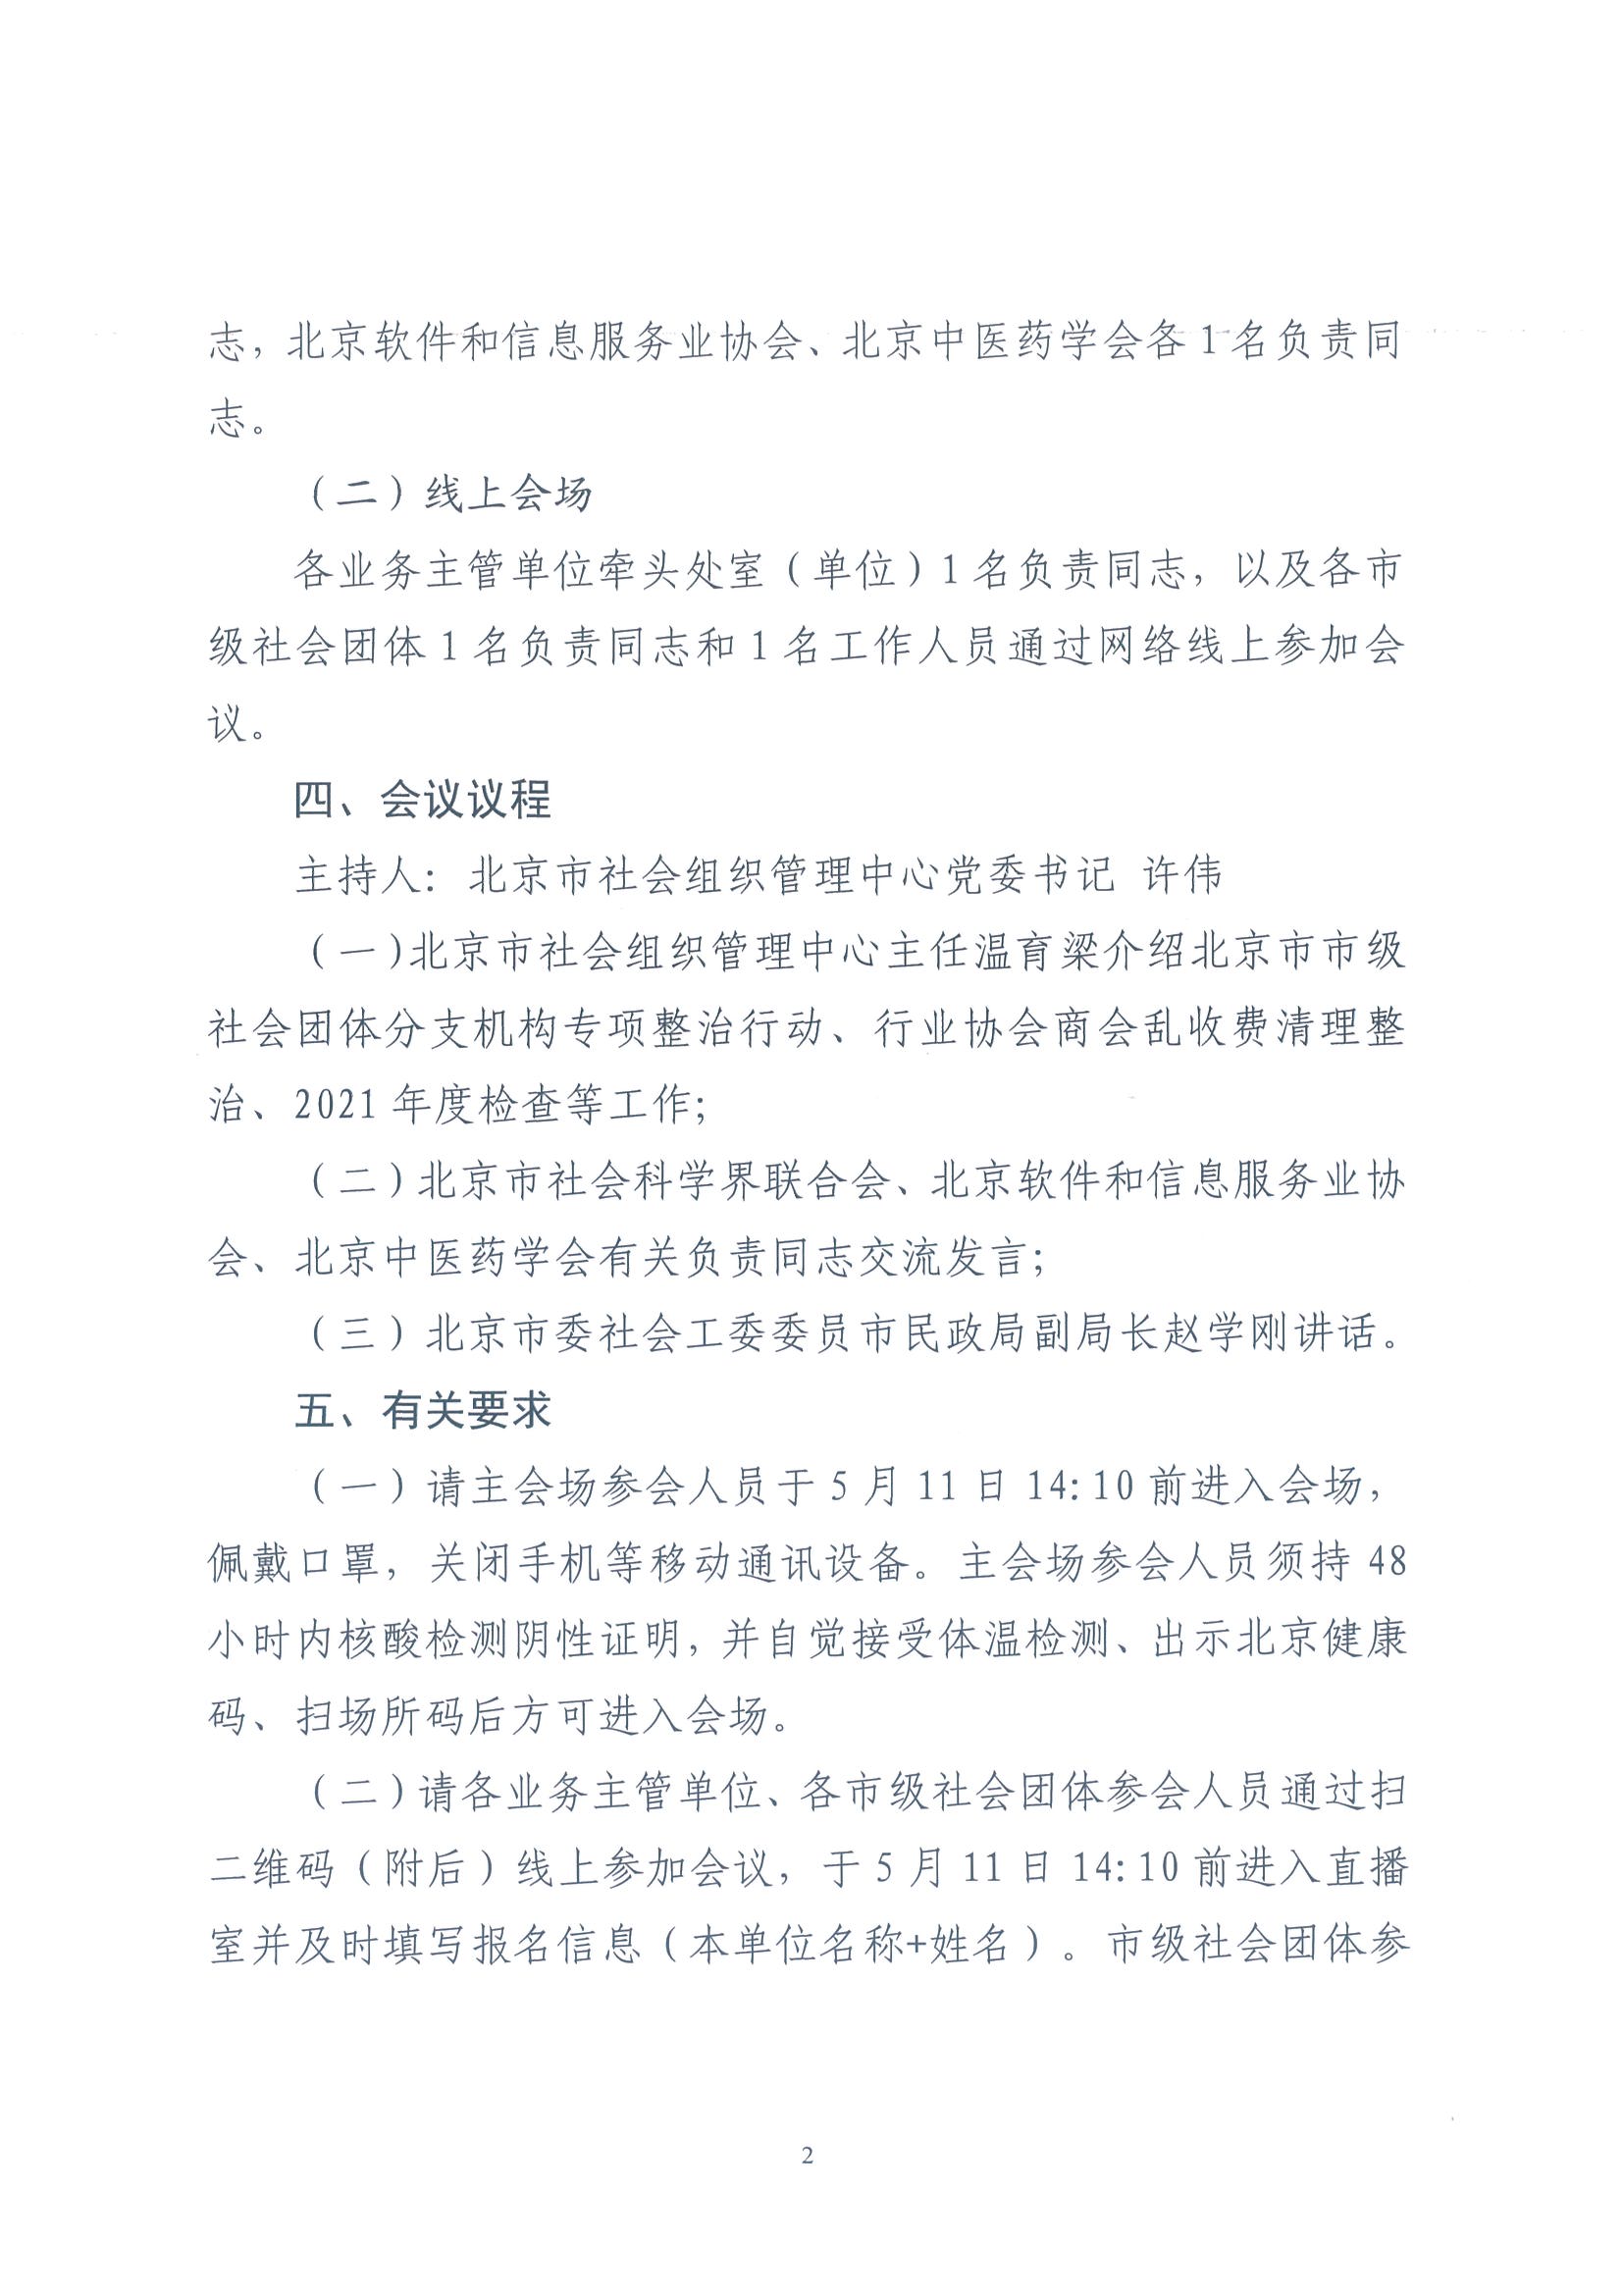 北京市民政局关于召开市级社会团体分支（代表）机构专项整治行动部署会议的通知1(1)_页面_2.jpg